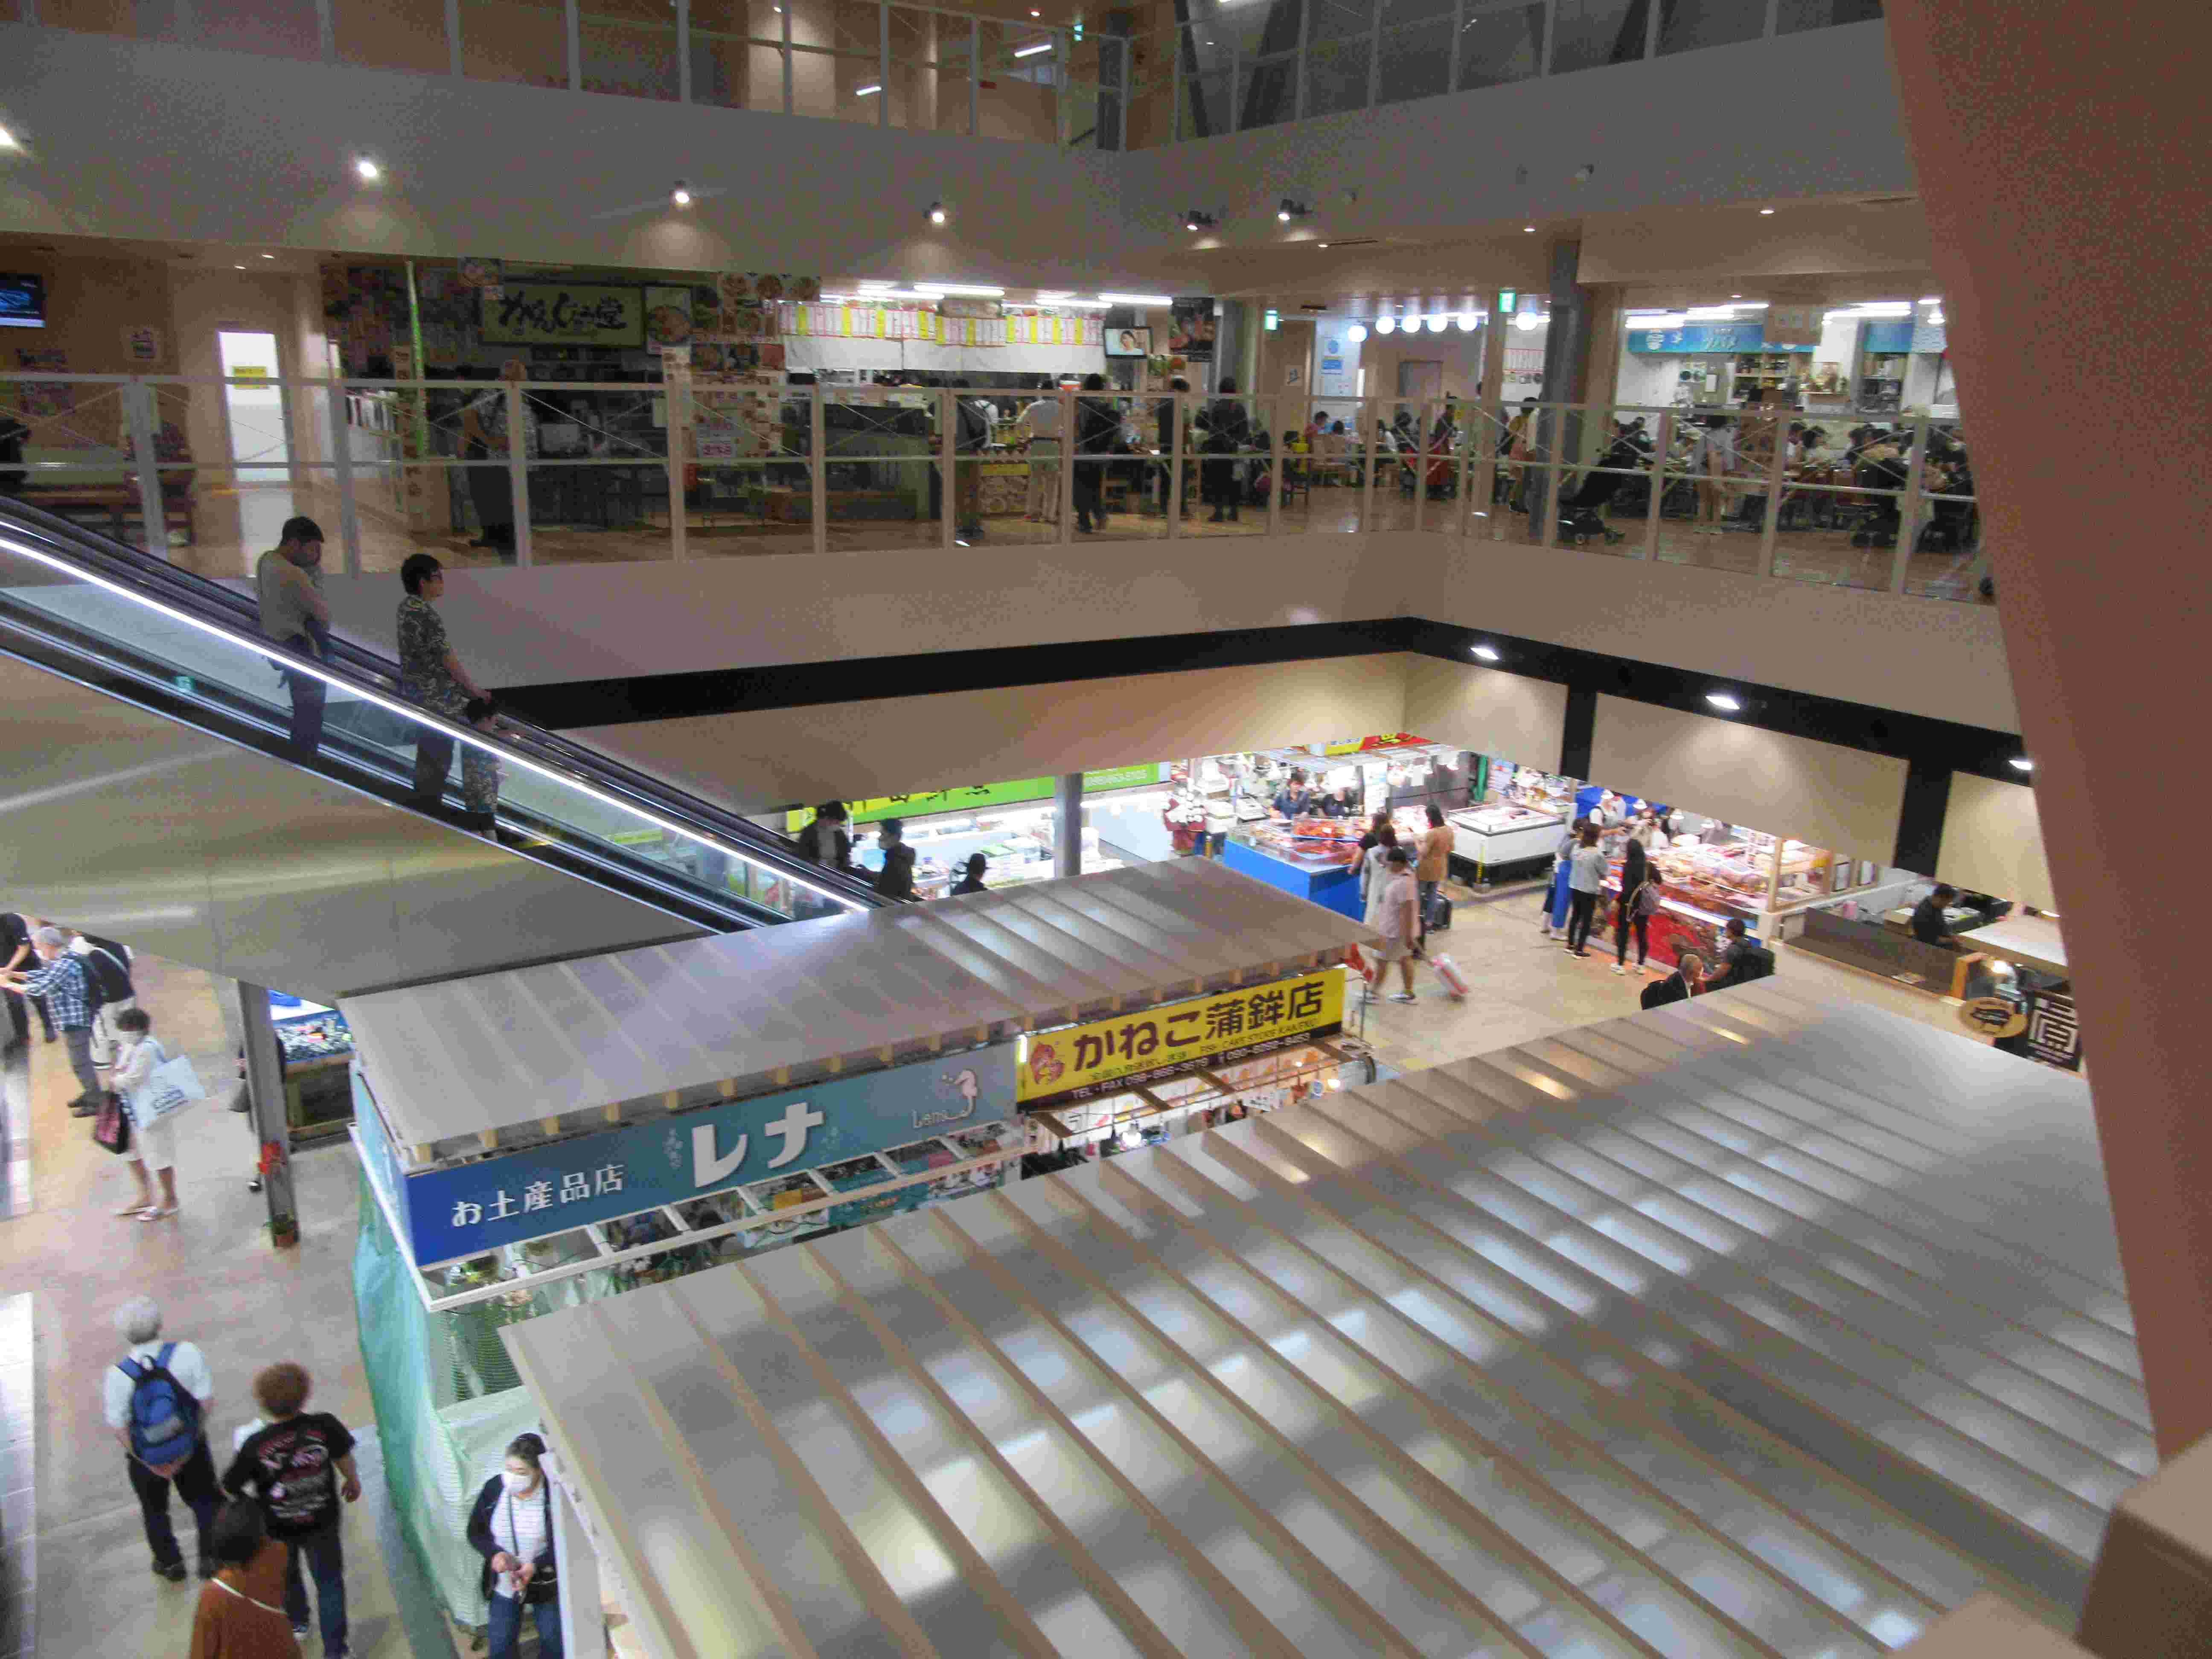 那覇市第一牧志公設市場の内部。リニューアルされており、エスカレーターがある。